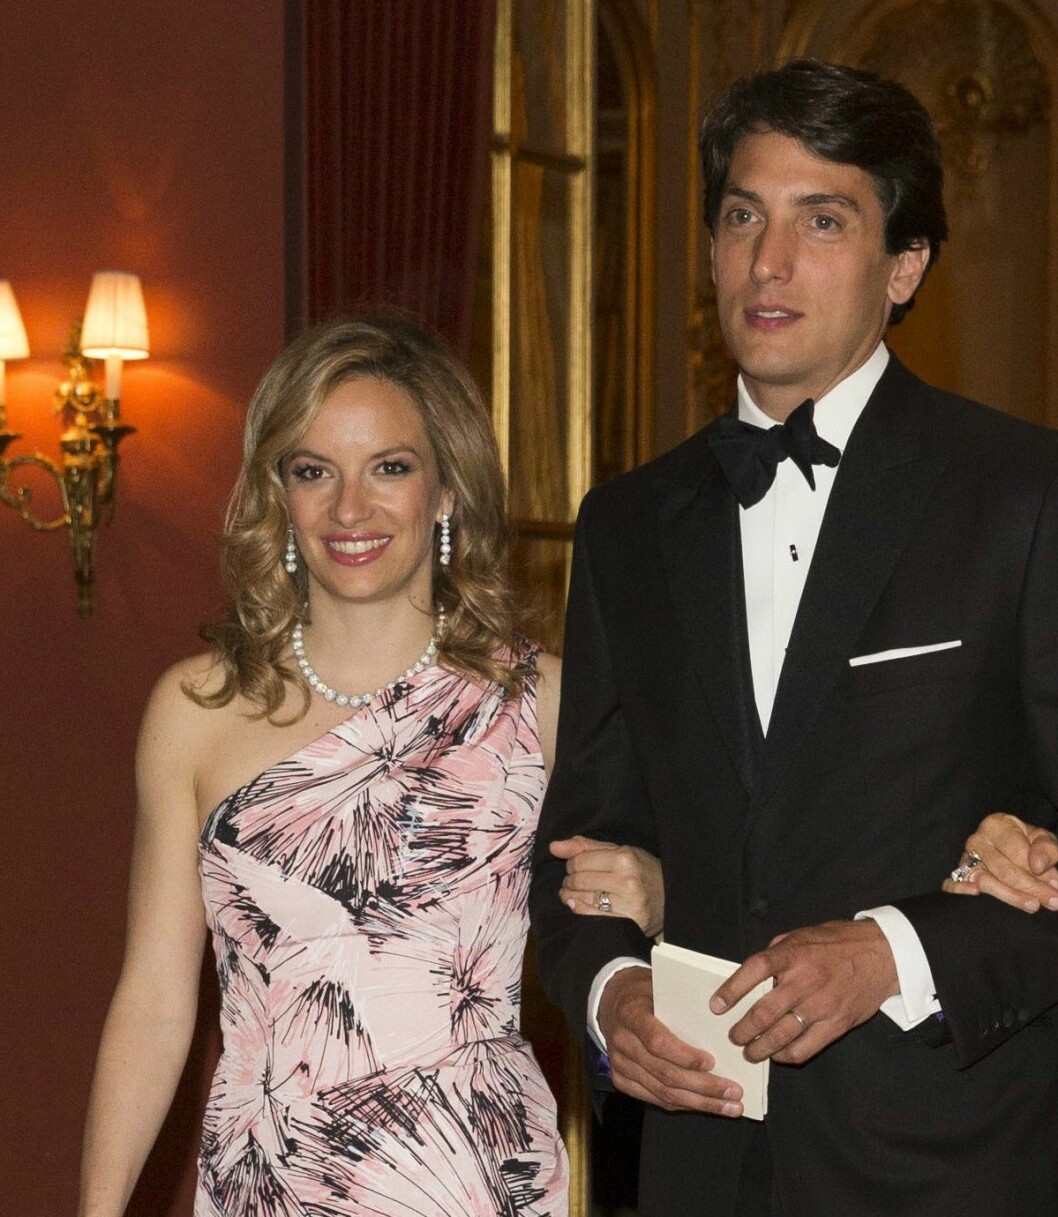 Coralie Charriol Paul med sin man Dennis, en gång framröstad som ”sexigast på Wall Street”.